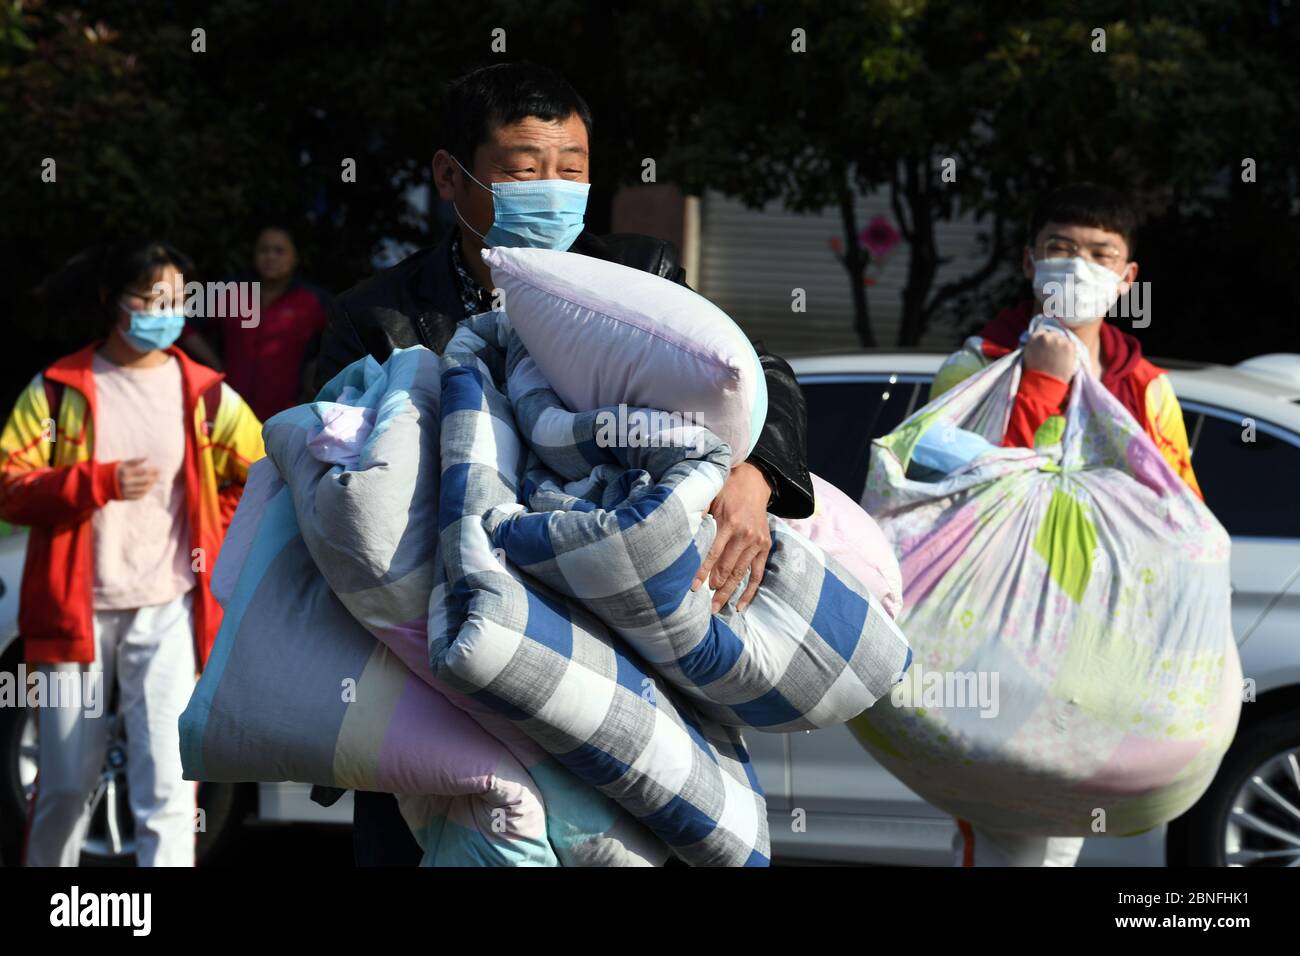 Les élèves avec masque facial retournent à l'école avec leurs bagages après deux vacances d'hiver et demie dans une école secondaire locale, la ville de Bozhou, en Chine orientale Banque D'Images